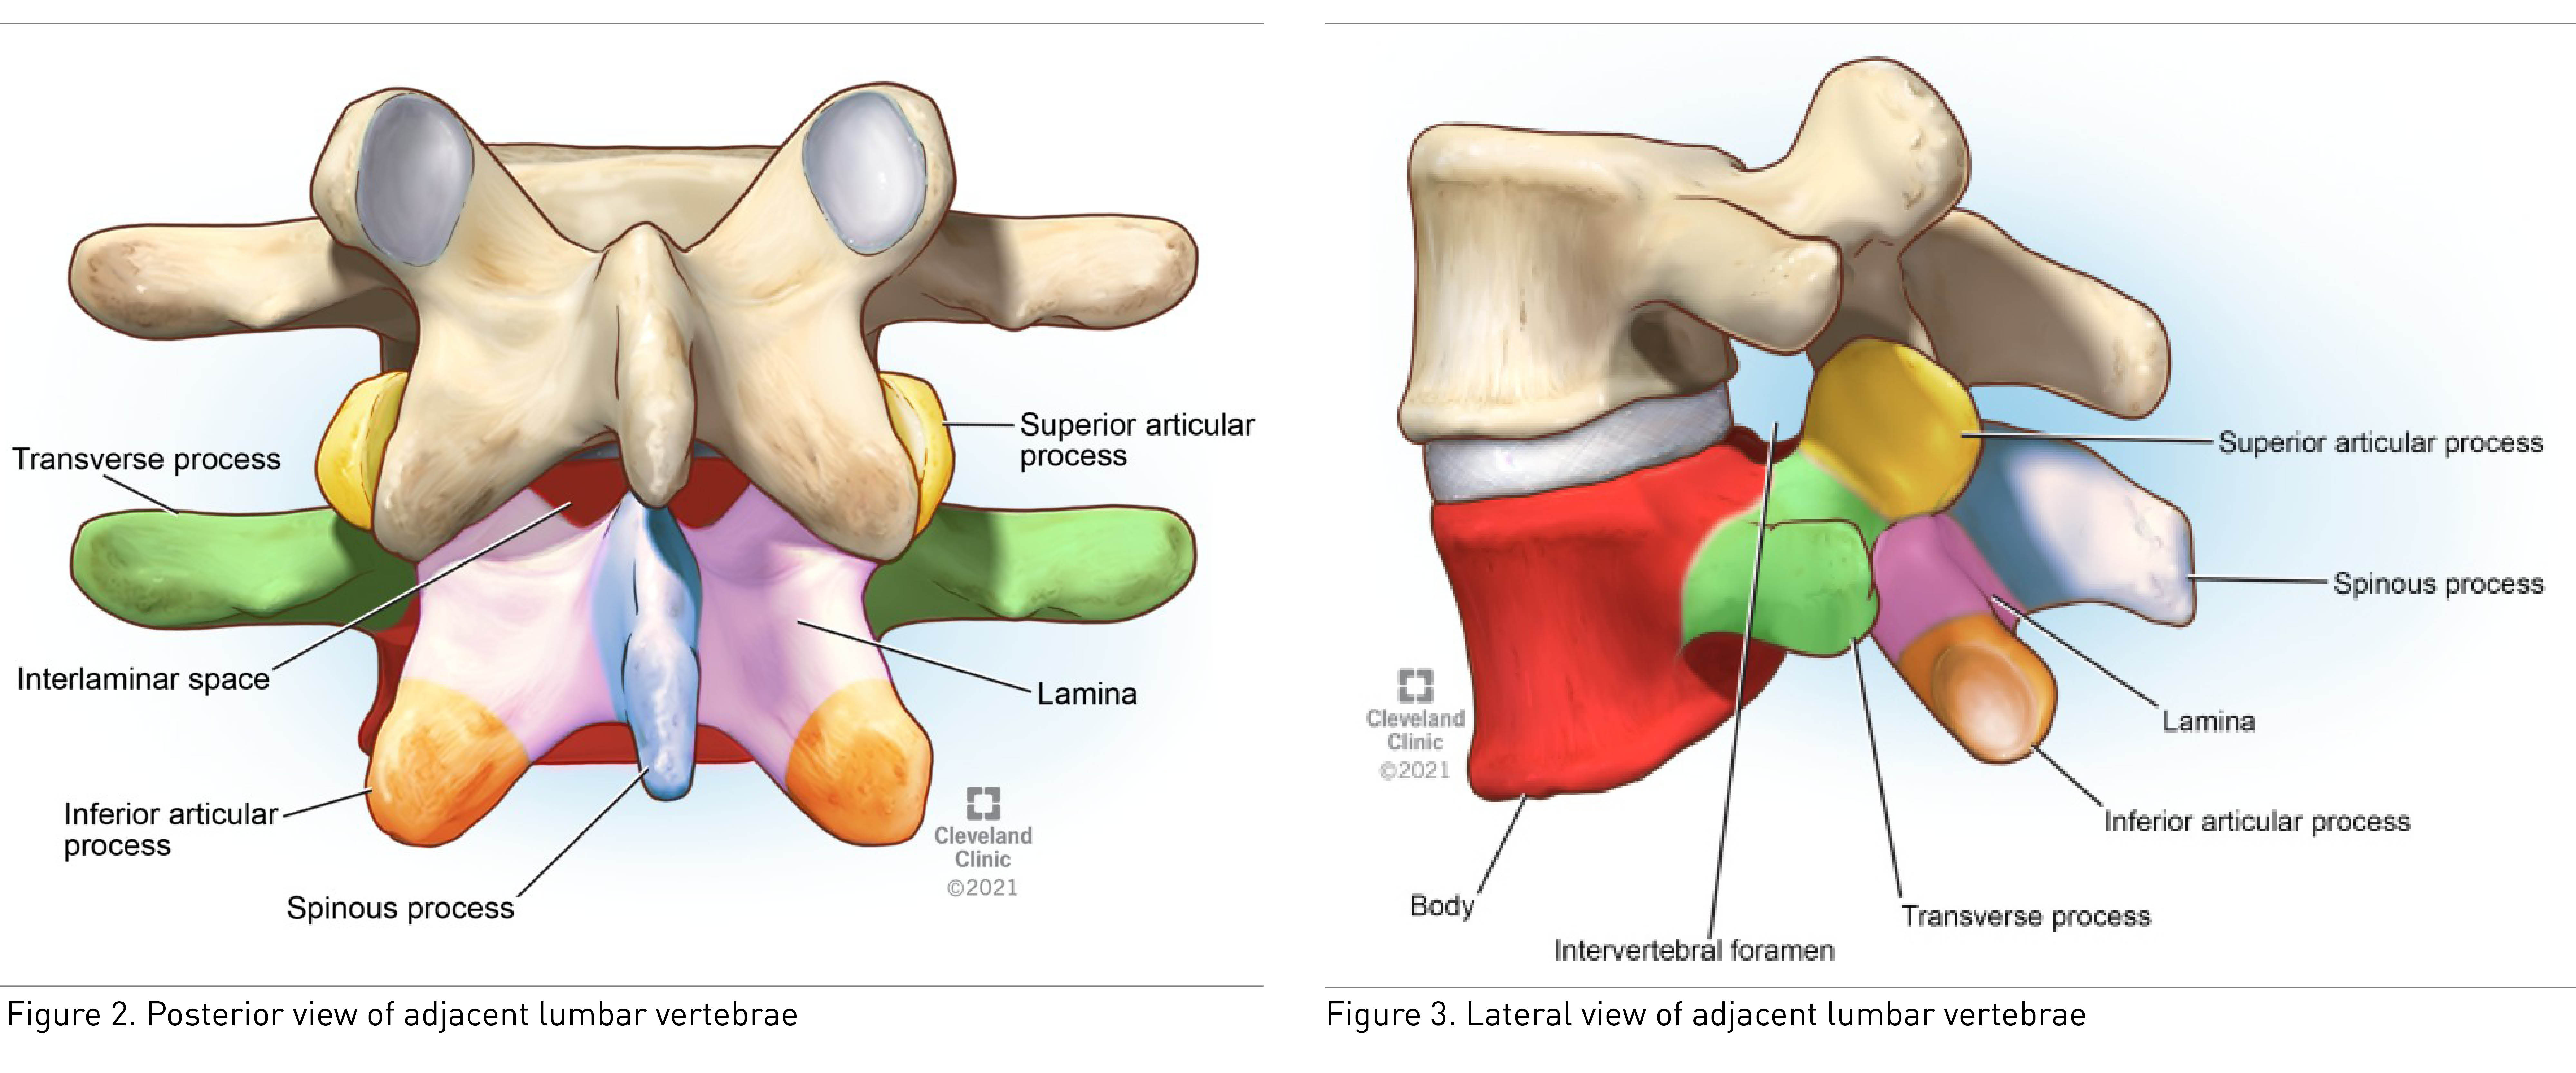 Posterior and lateral views of adjacent lumbar vertebrae